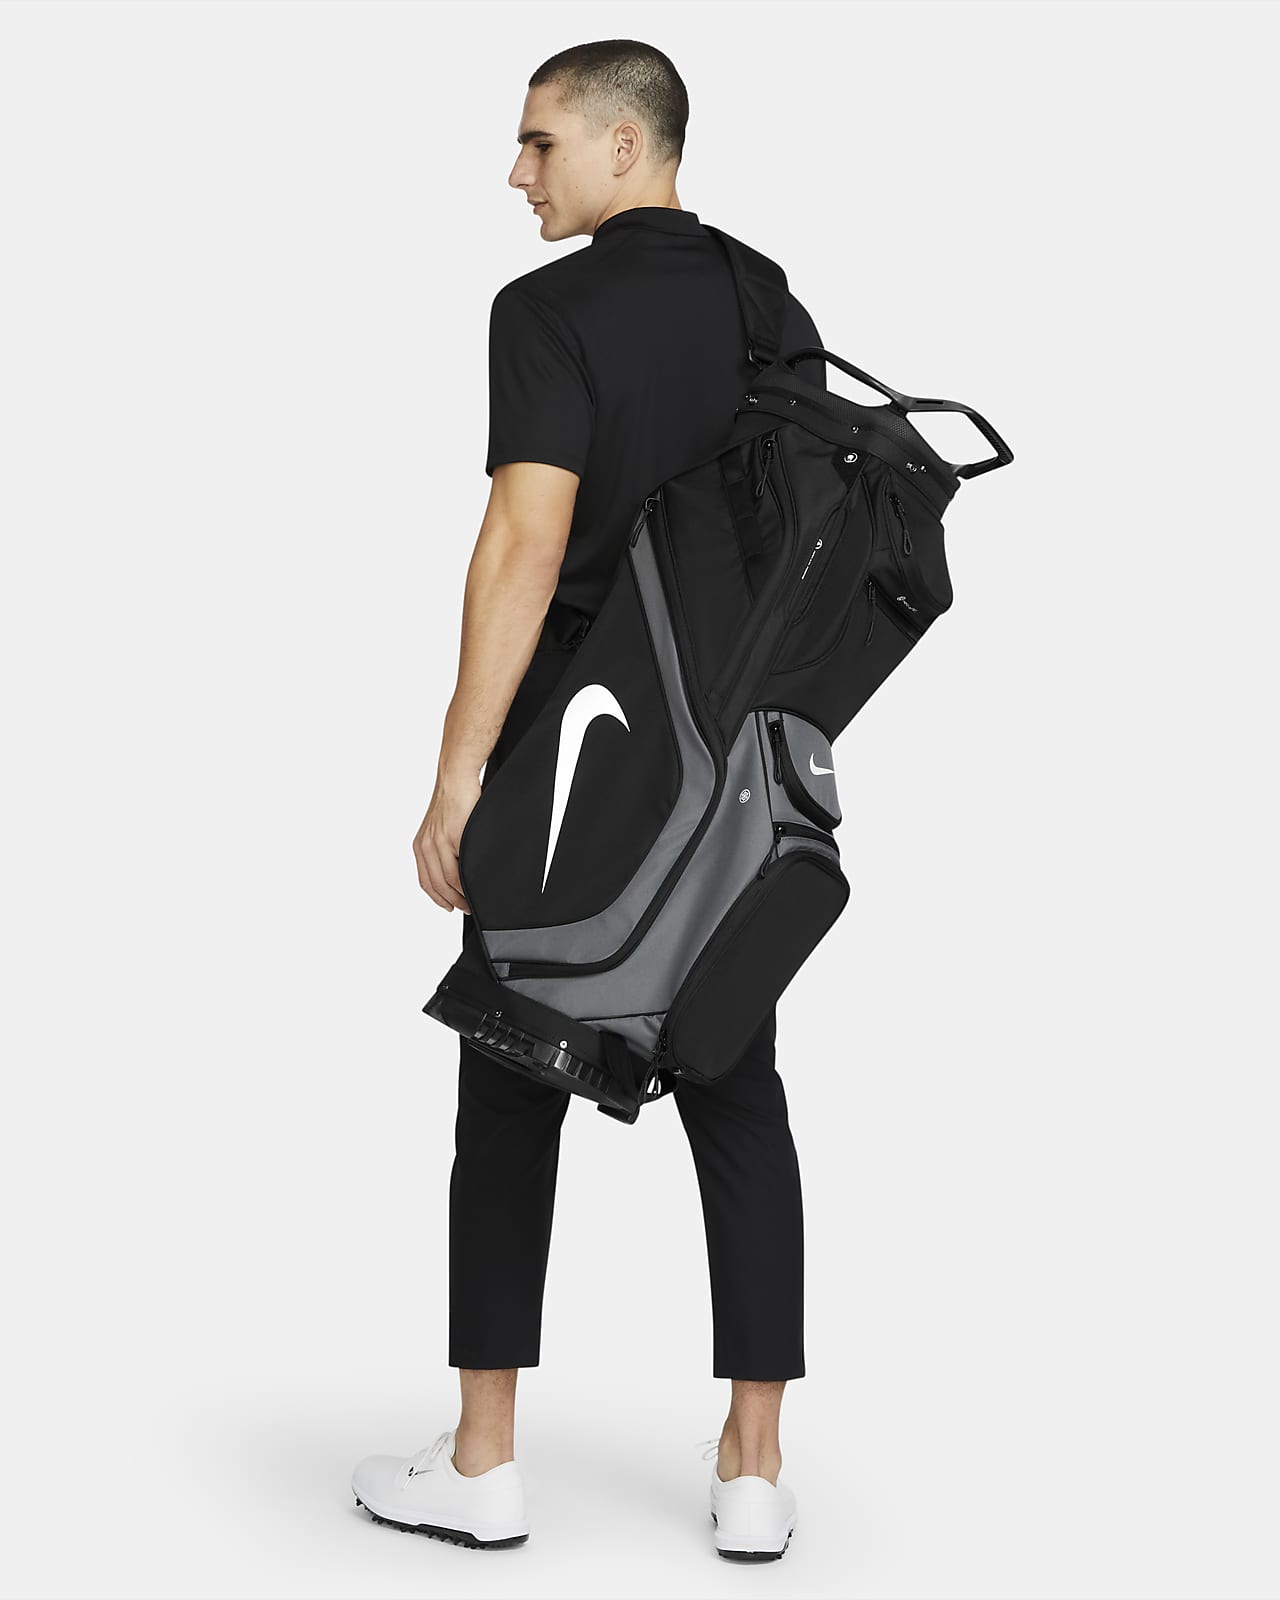 Τσάντα γκολφ Nike Performance Cart